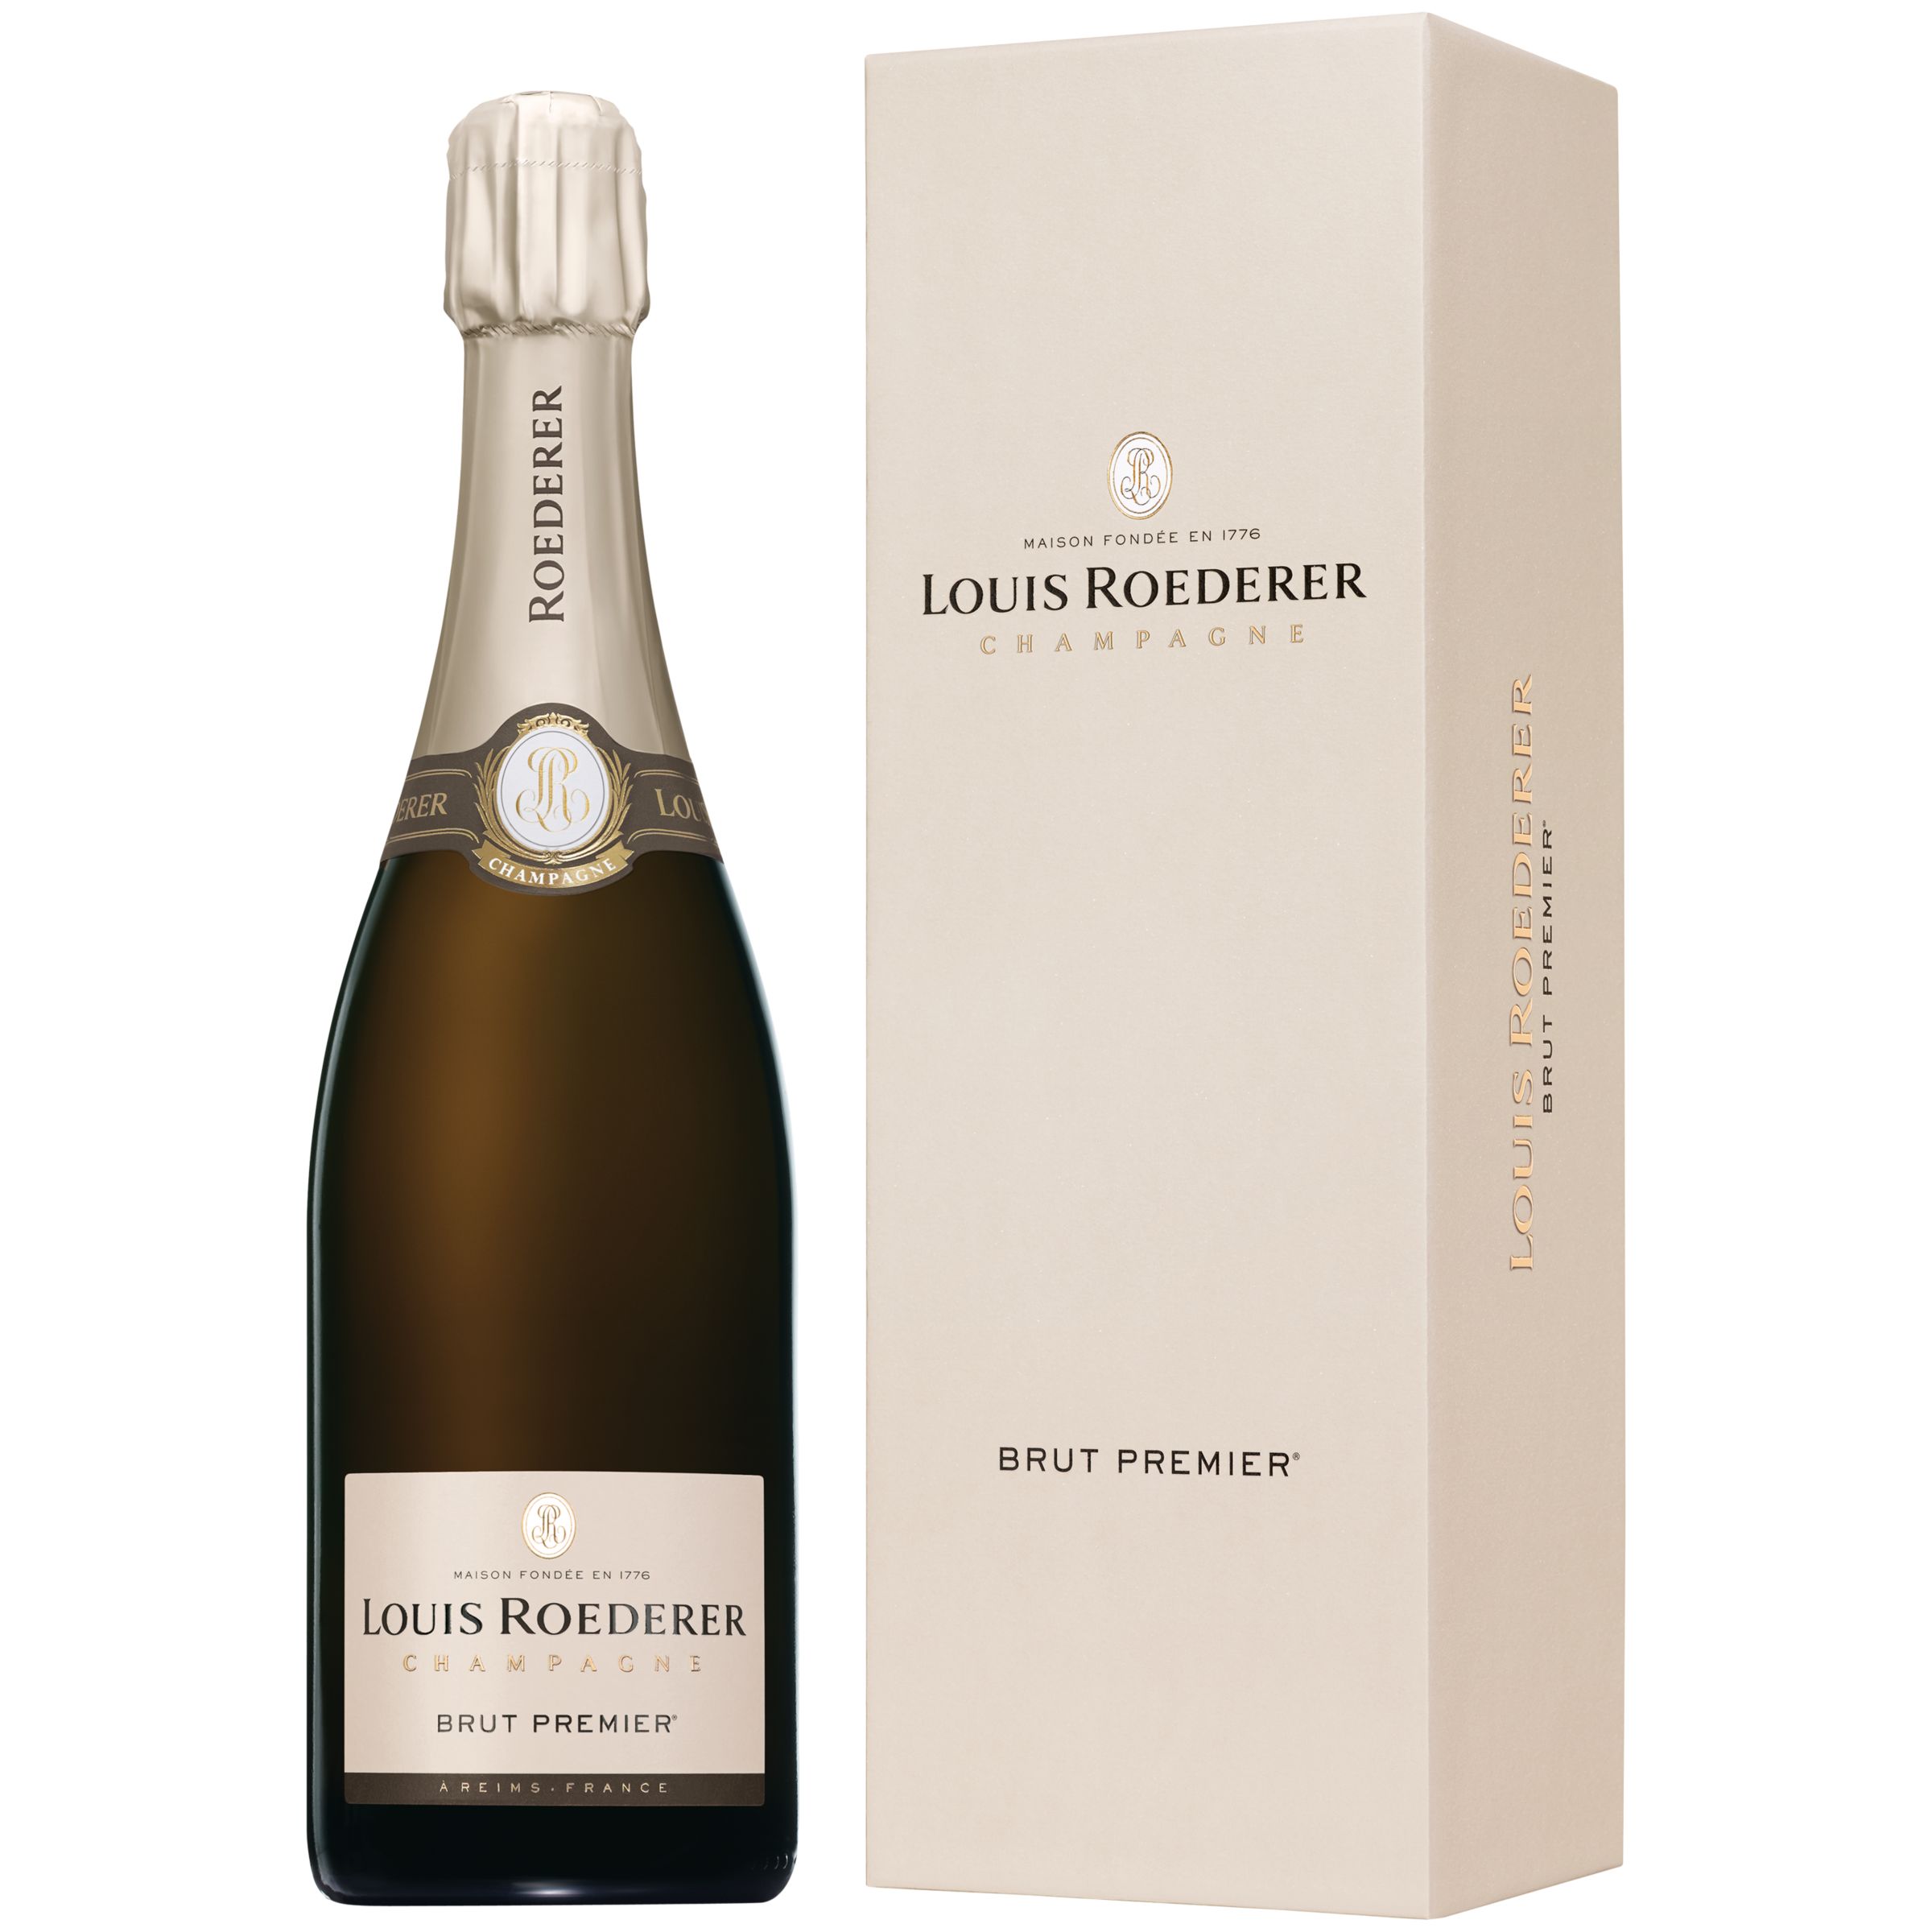 BuyLouis Roederer Brut Premier NV Champagne, 75cl Online at johnlewis.com